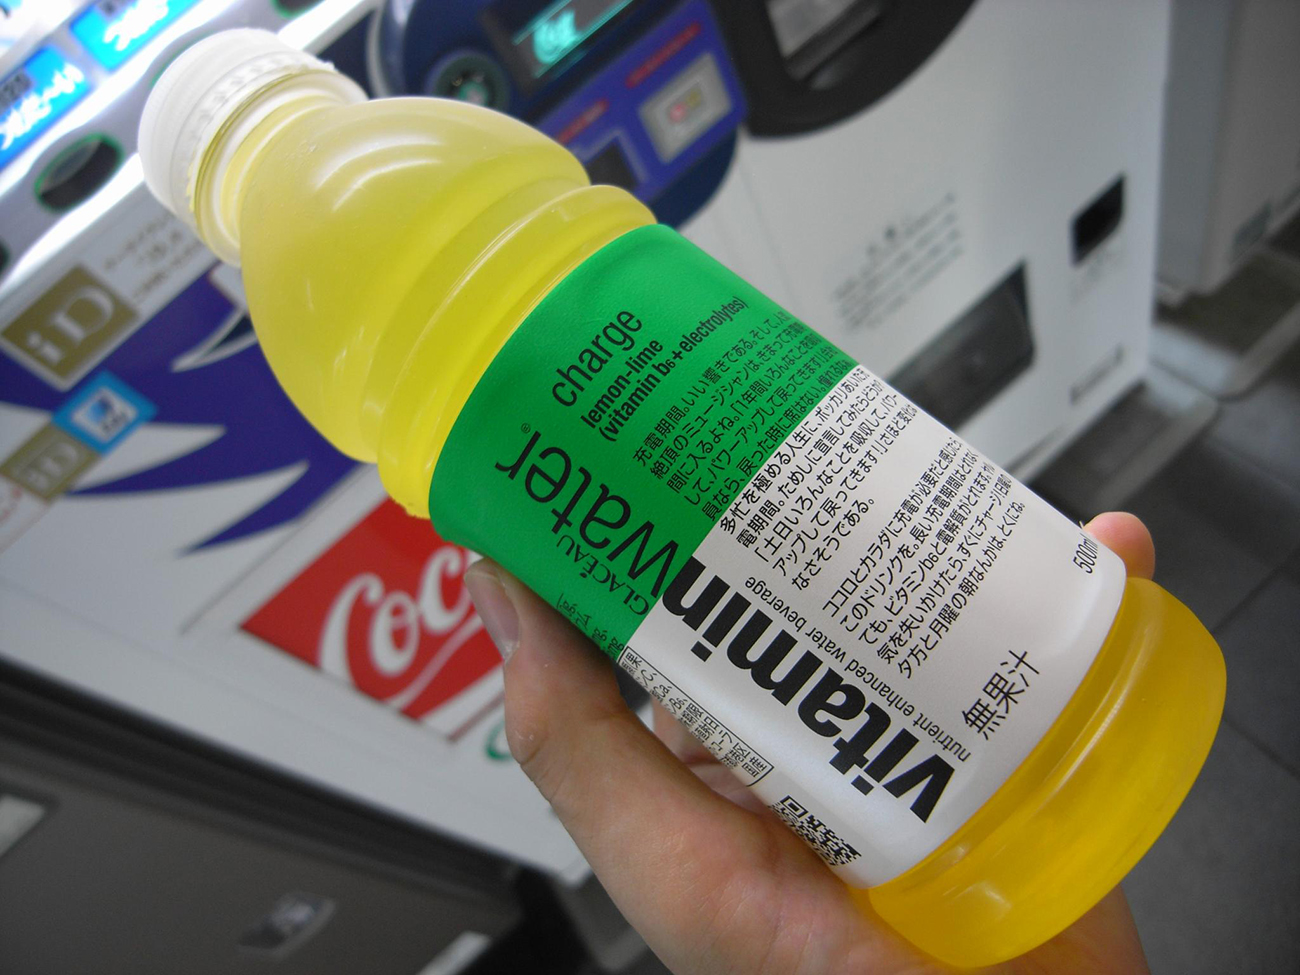 一张照片显示有人拿着一瓶维生素水。 标签用英语和日语两种字母书写。